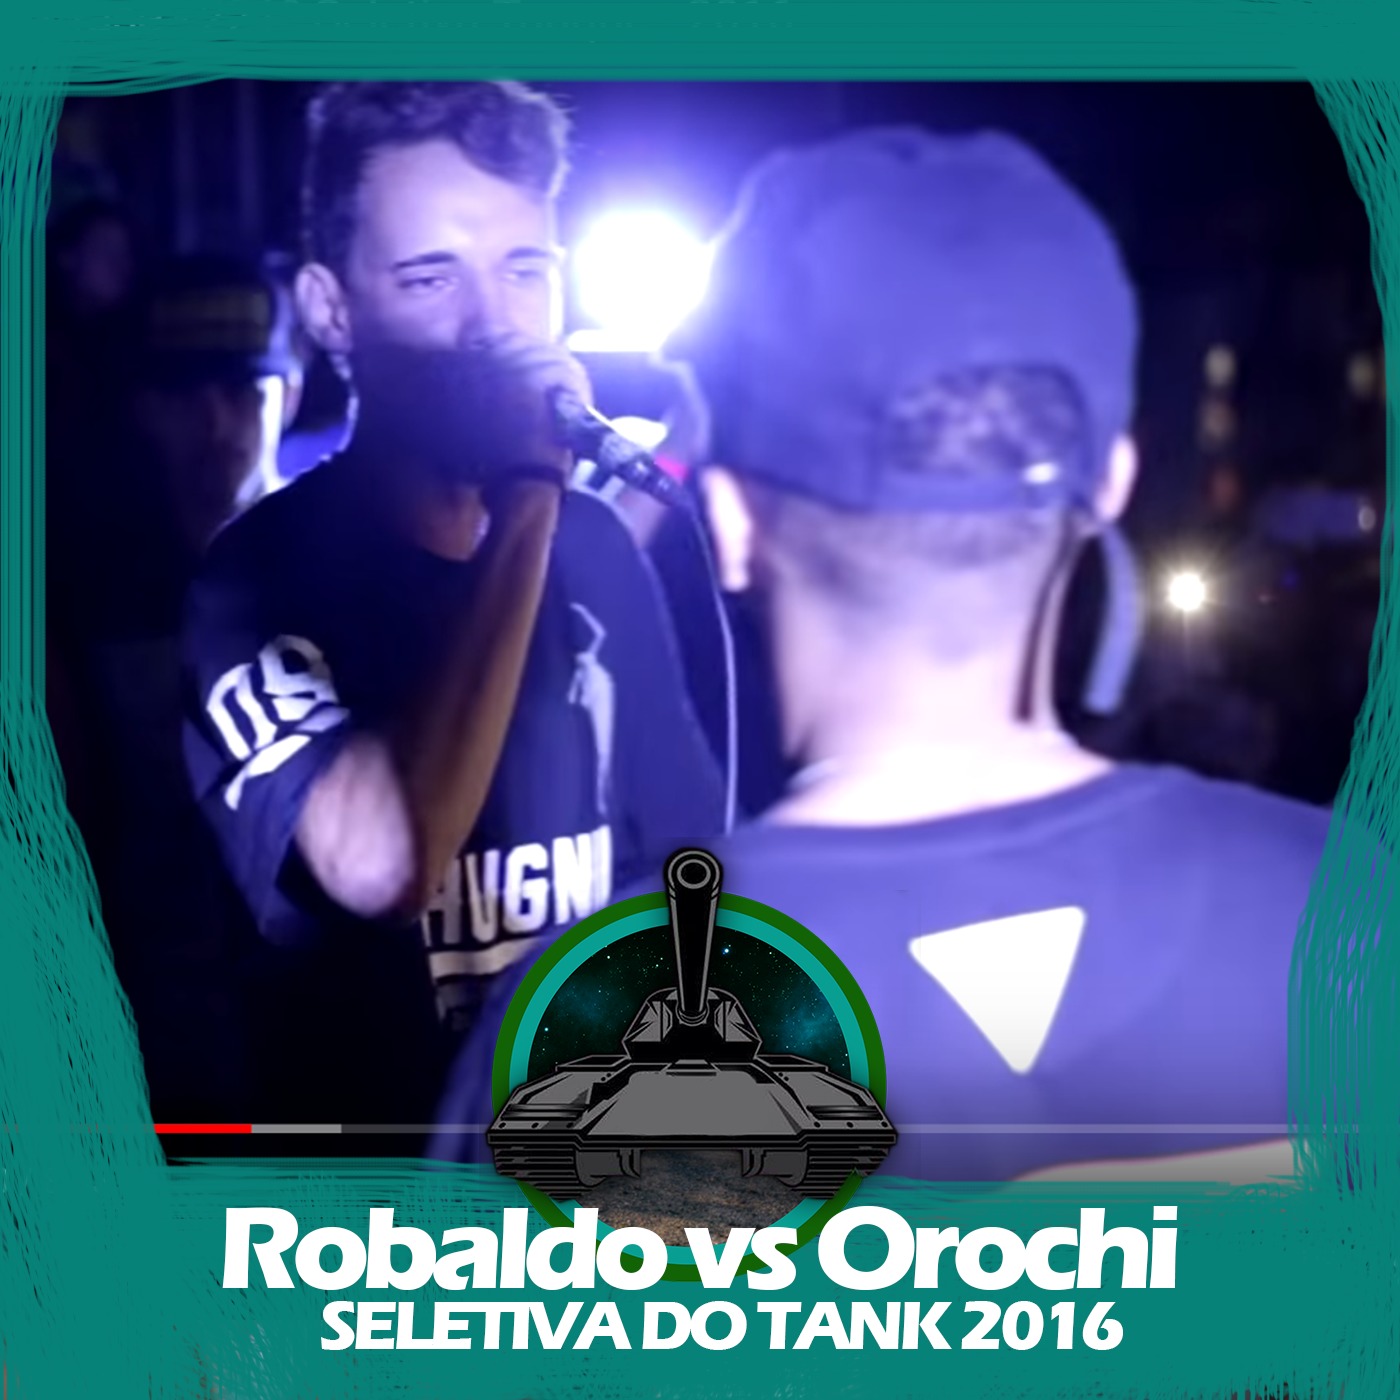 Robaldo X Orochi (Seletiva do Tank 2016)